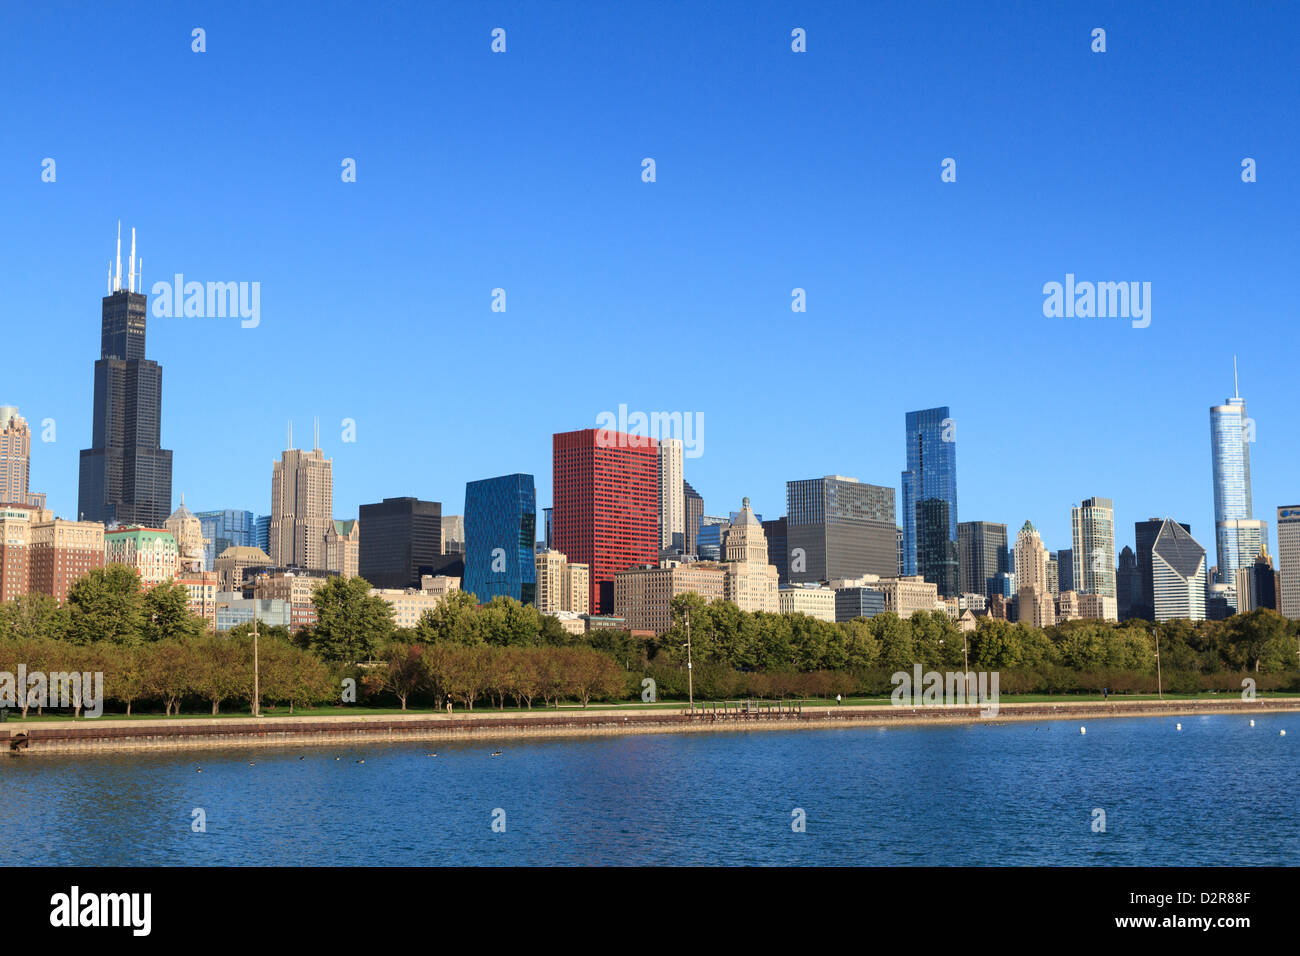 Skyline von Chicago und Lake Michigan mit dem Willis Tower, ehemals Sears Tower auf der linken Seite, Chicago, Illinois, USA Stockfoto